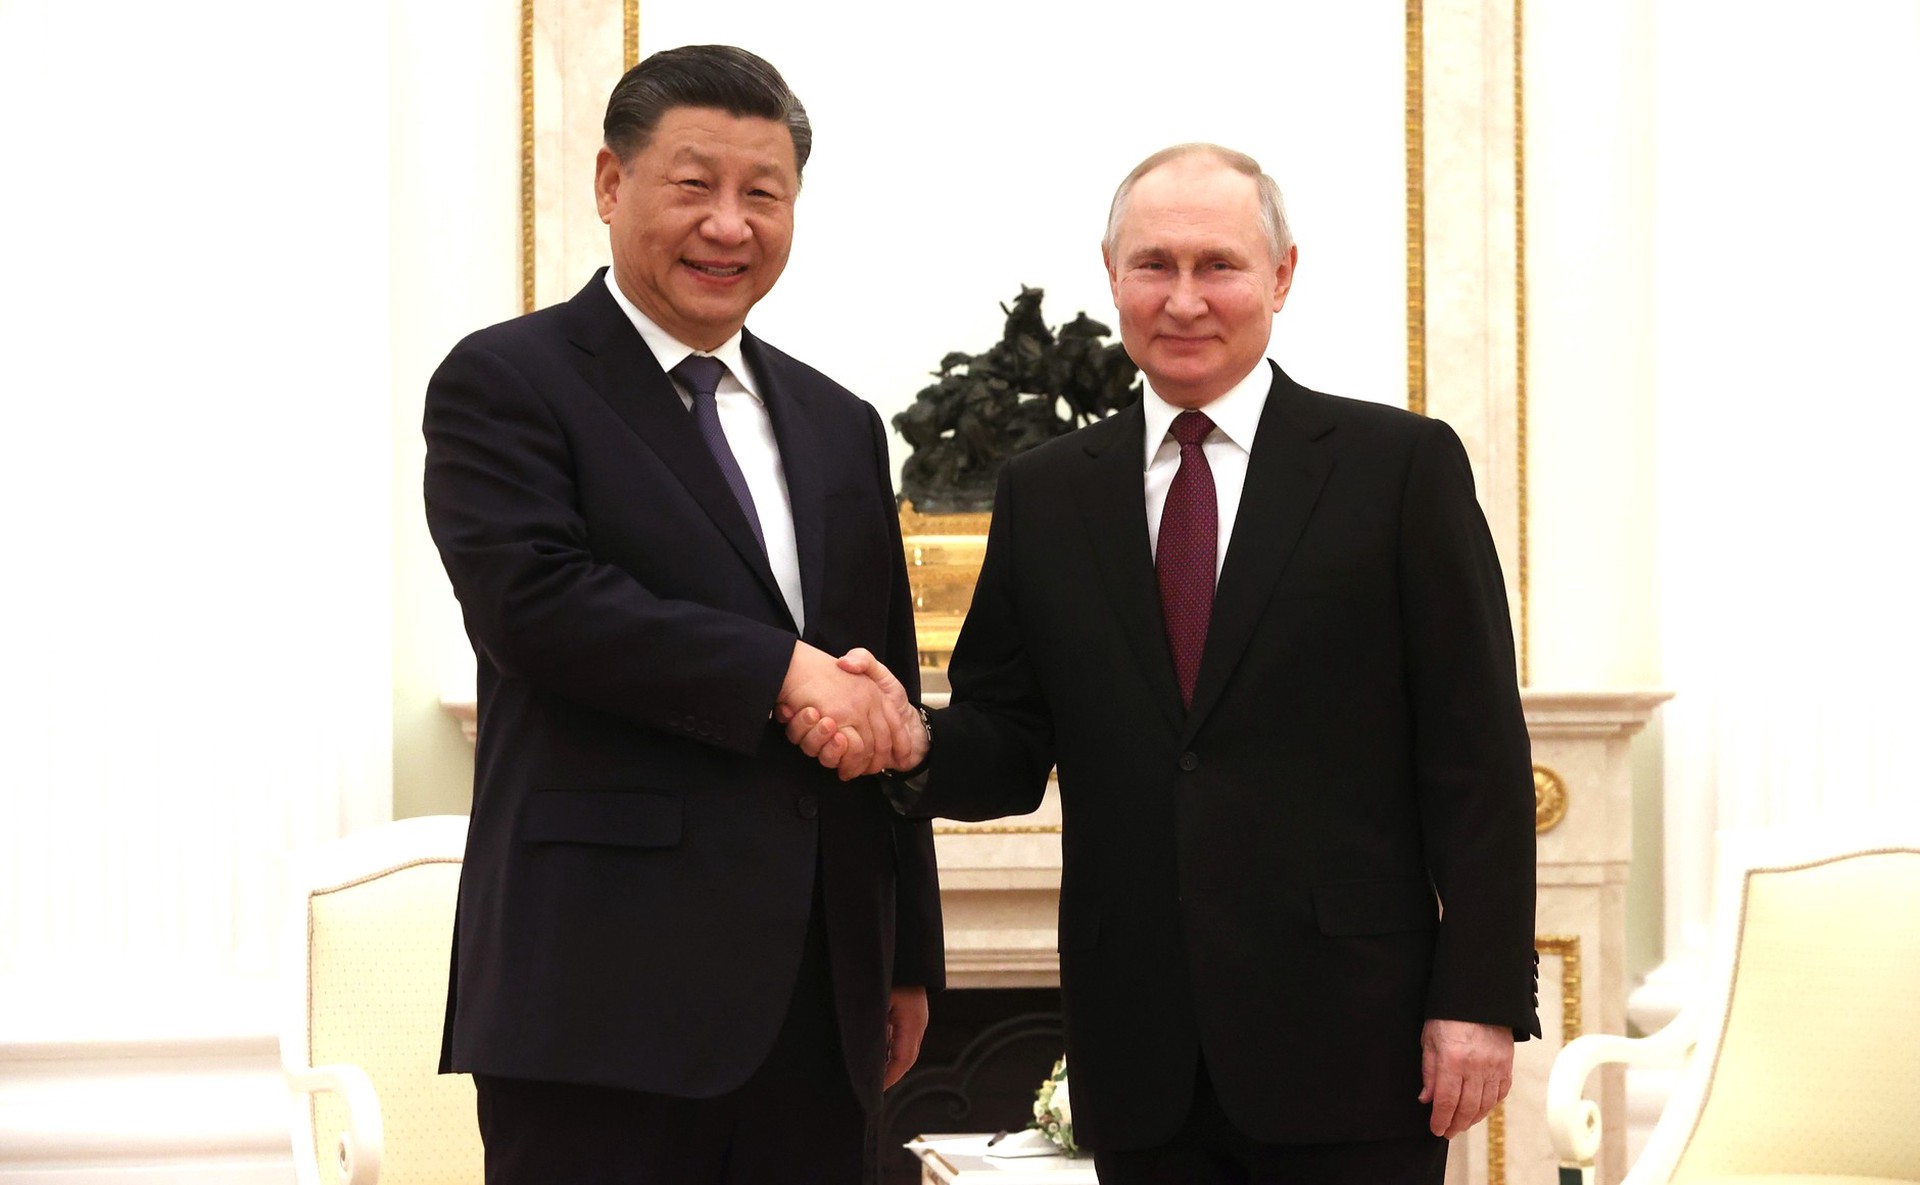 Путин и Си Цзиньпин во вторник проведут официальные переговоры в Большом Кремлёвском дворце